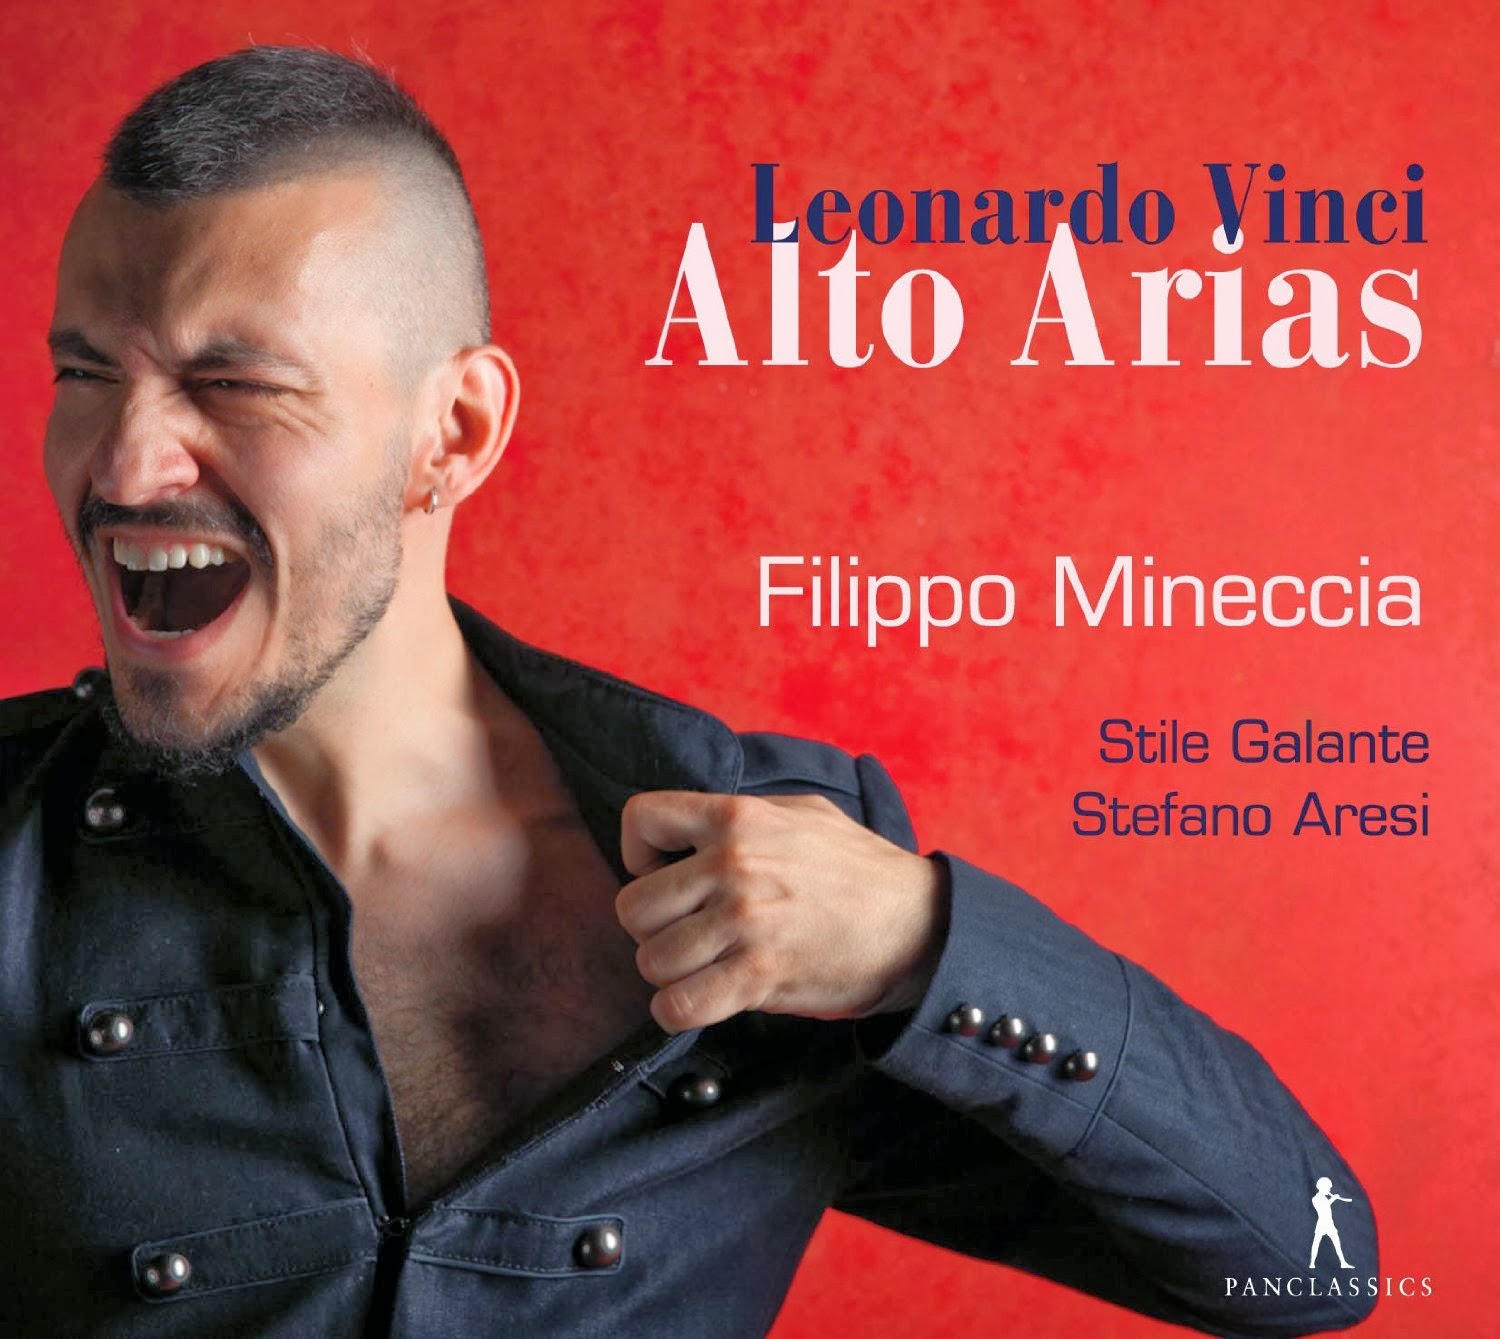 Leonardo Vinci - Alto Arias - Filippo Mineccia - PC 10297